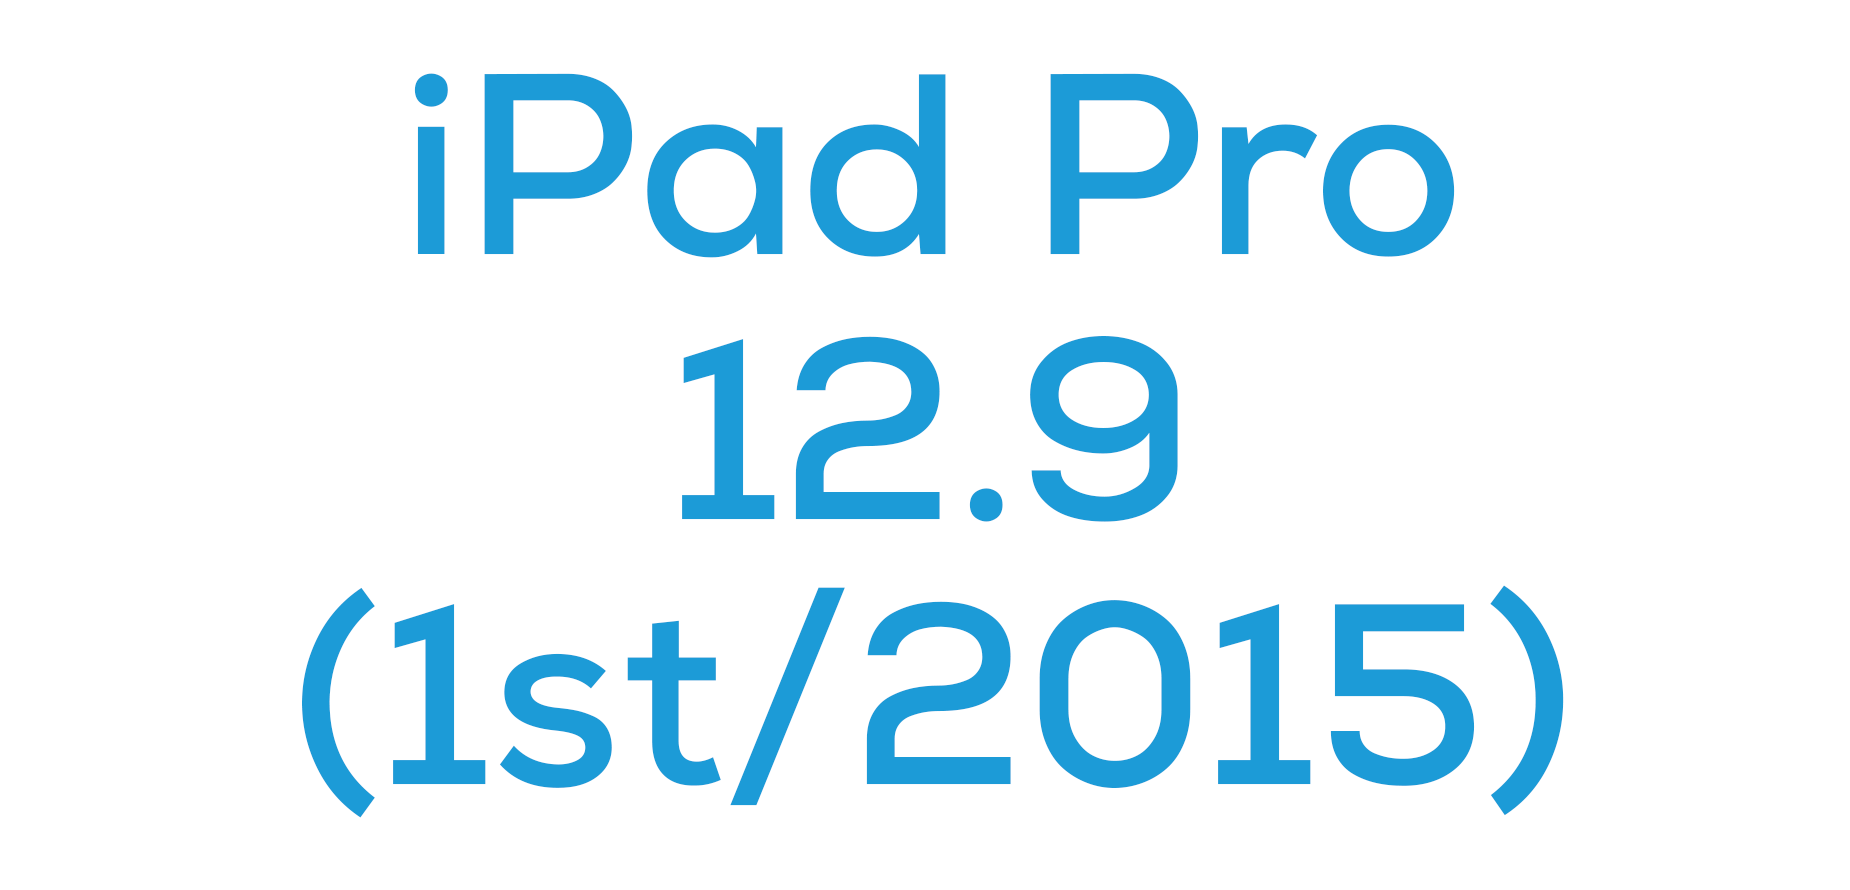 iPad Pro 12.9 (1st/2015)